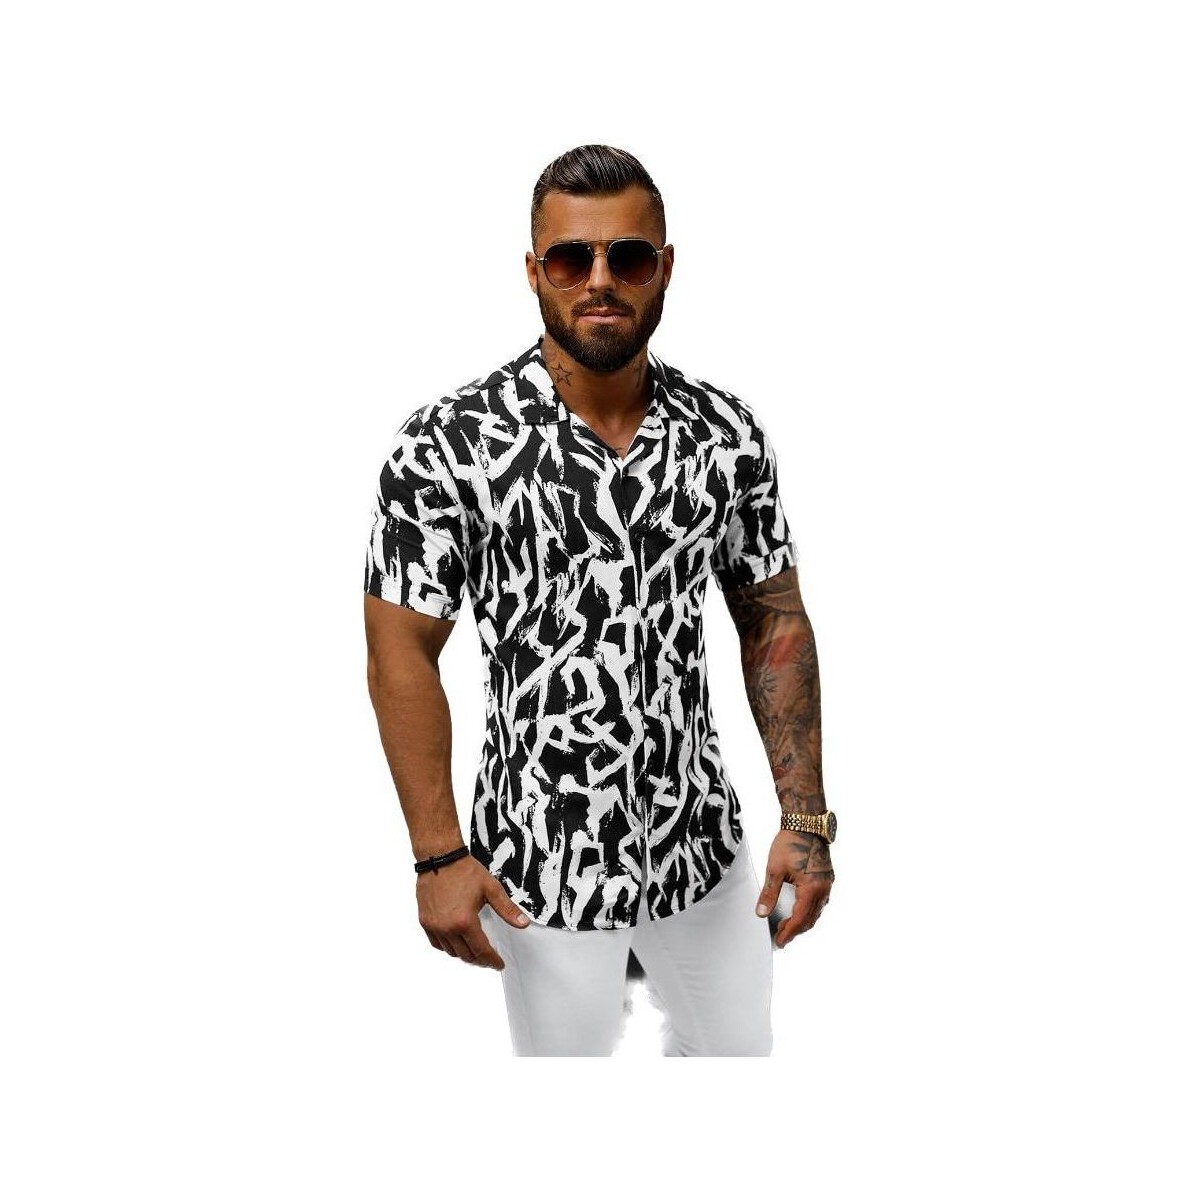 Textil Muži Košile s dlouhymi rukávy Ozonee Pánská košile s krátkým rukávem Kelatin černo-bílá Černá